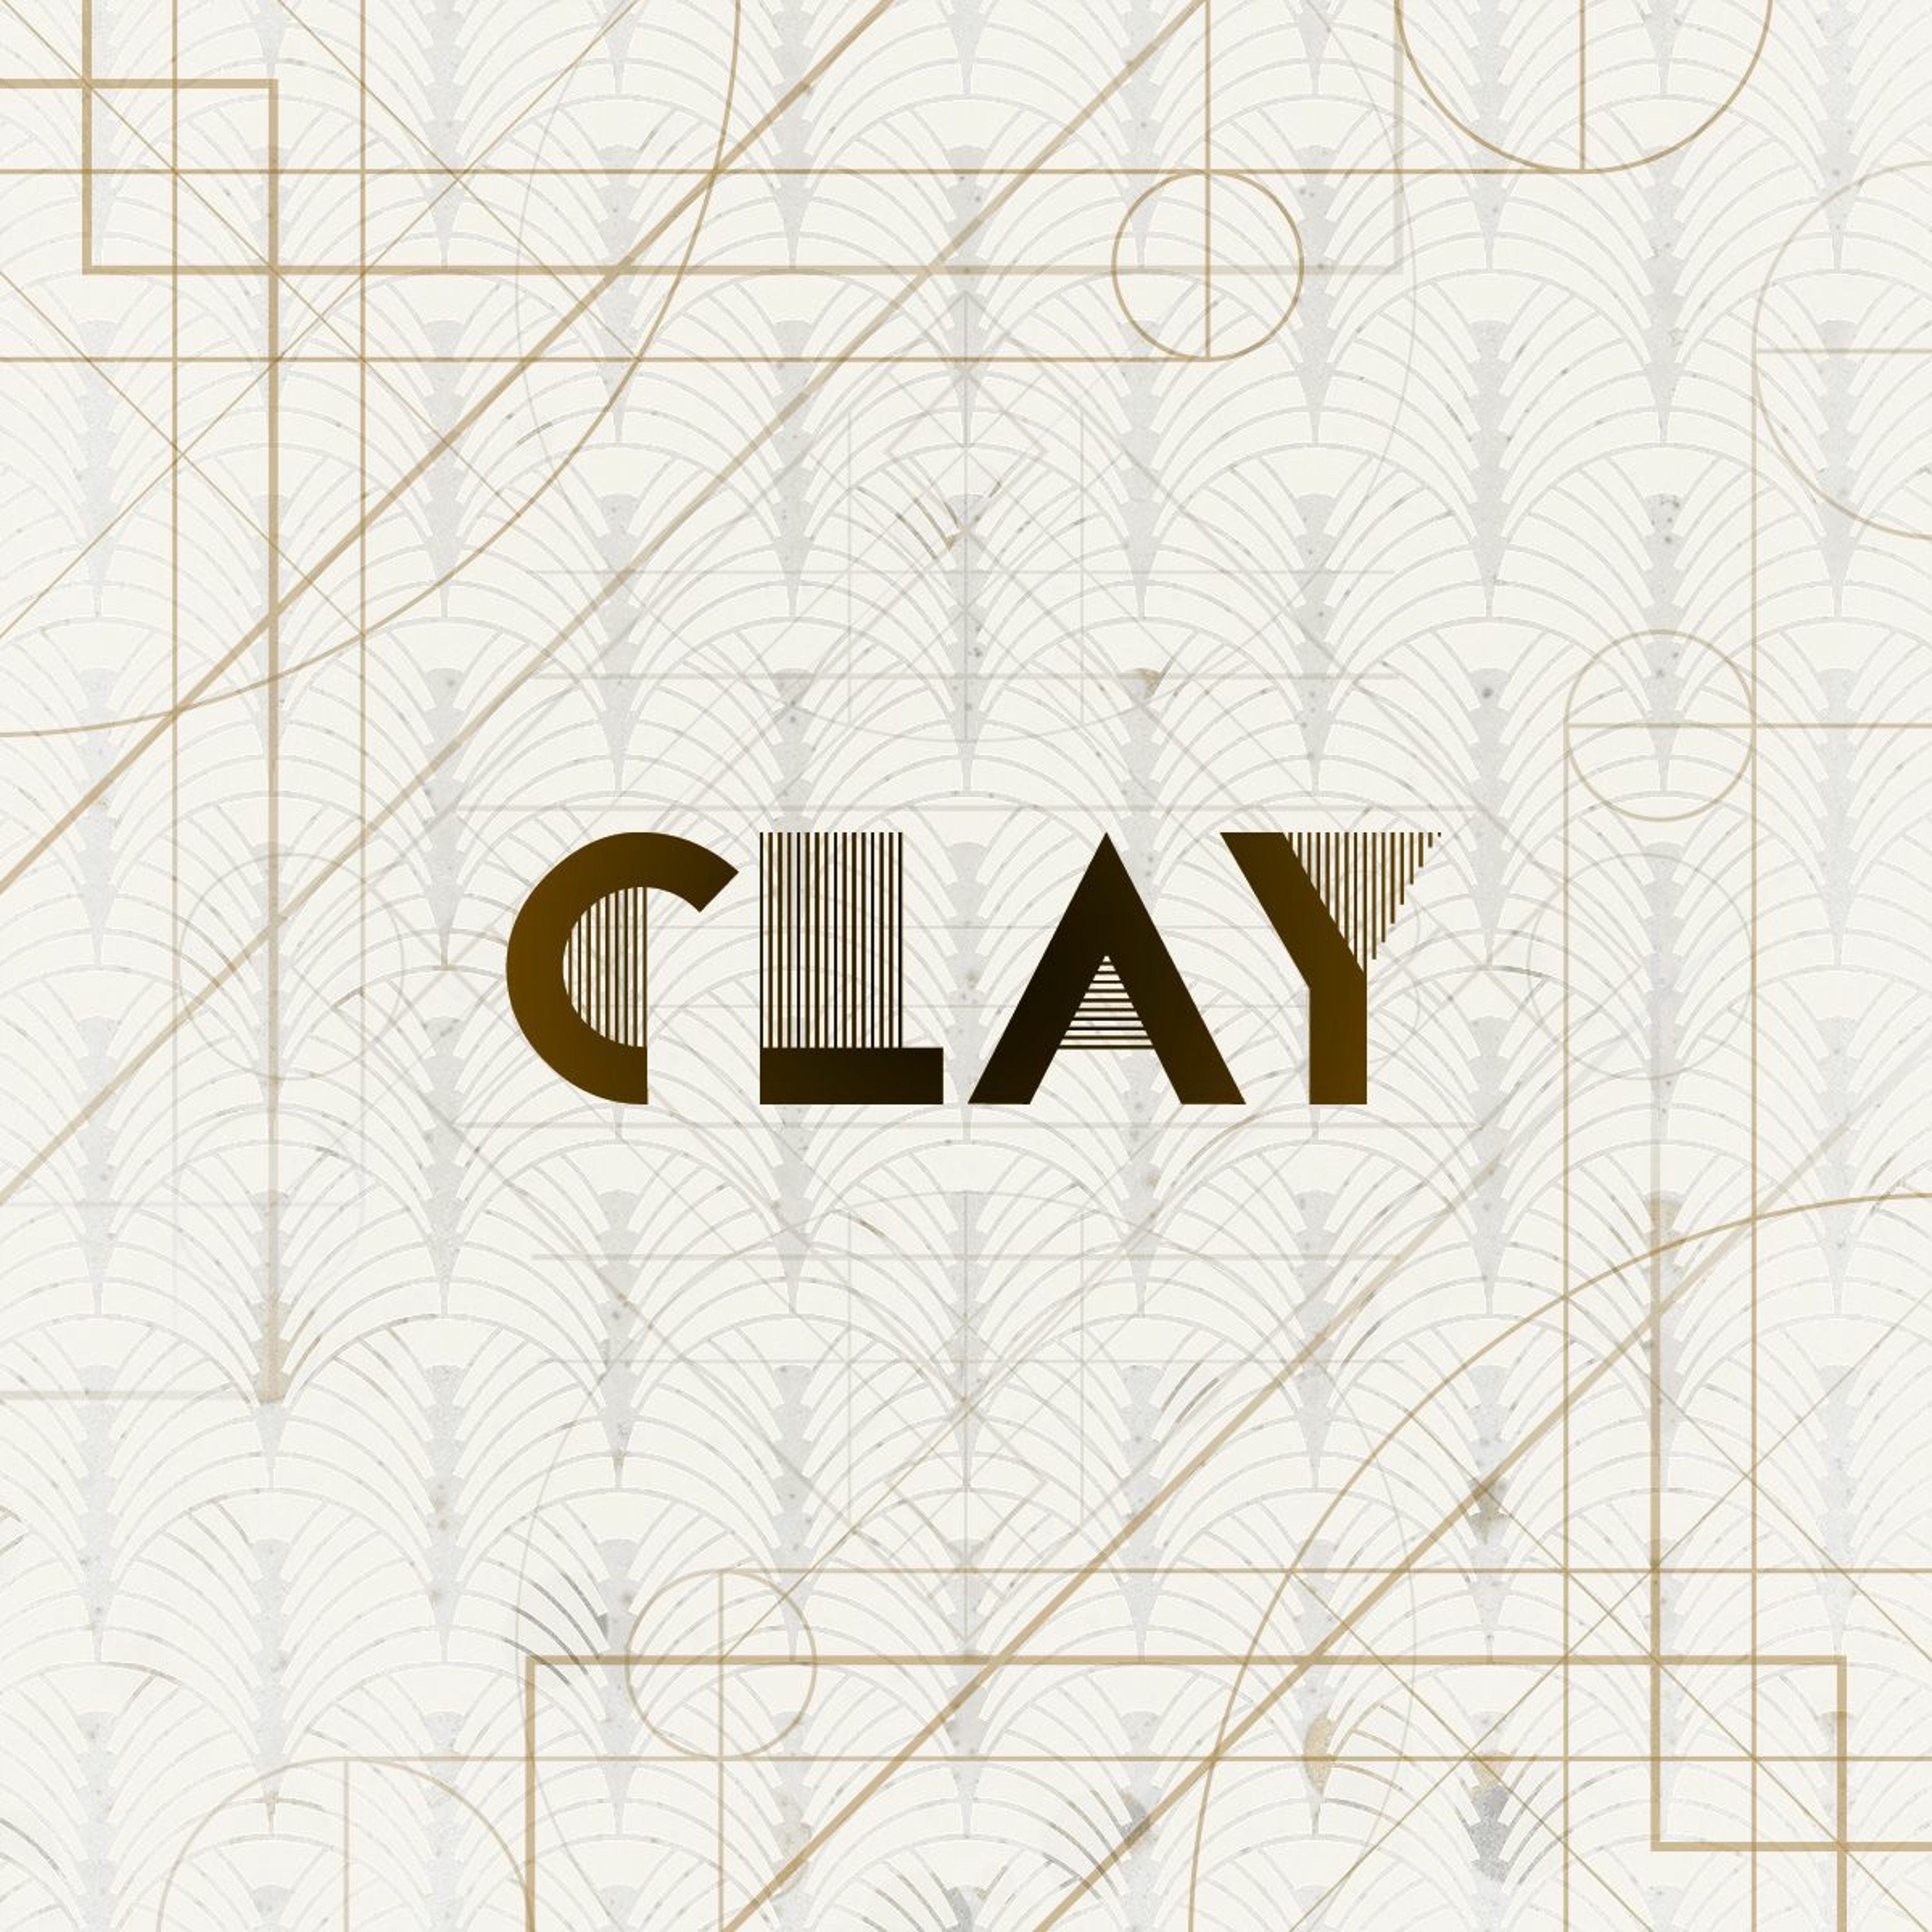 'Clay' / Stuart Argue